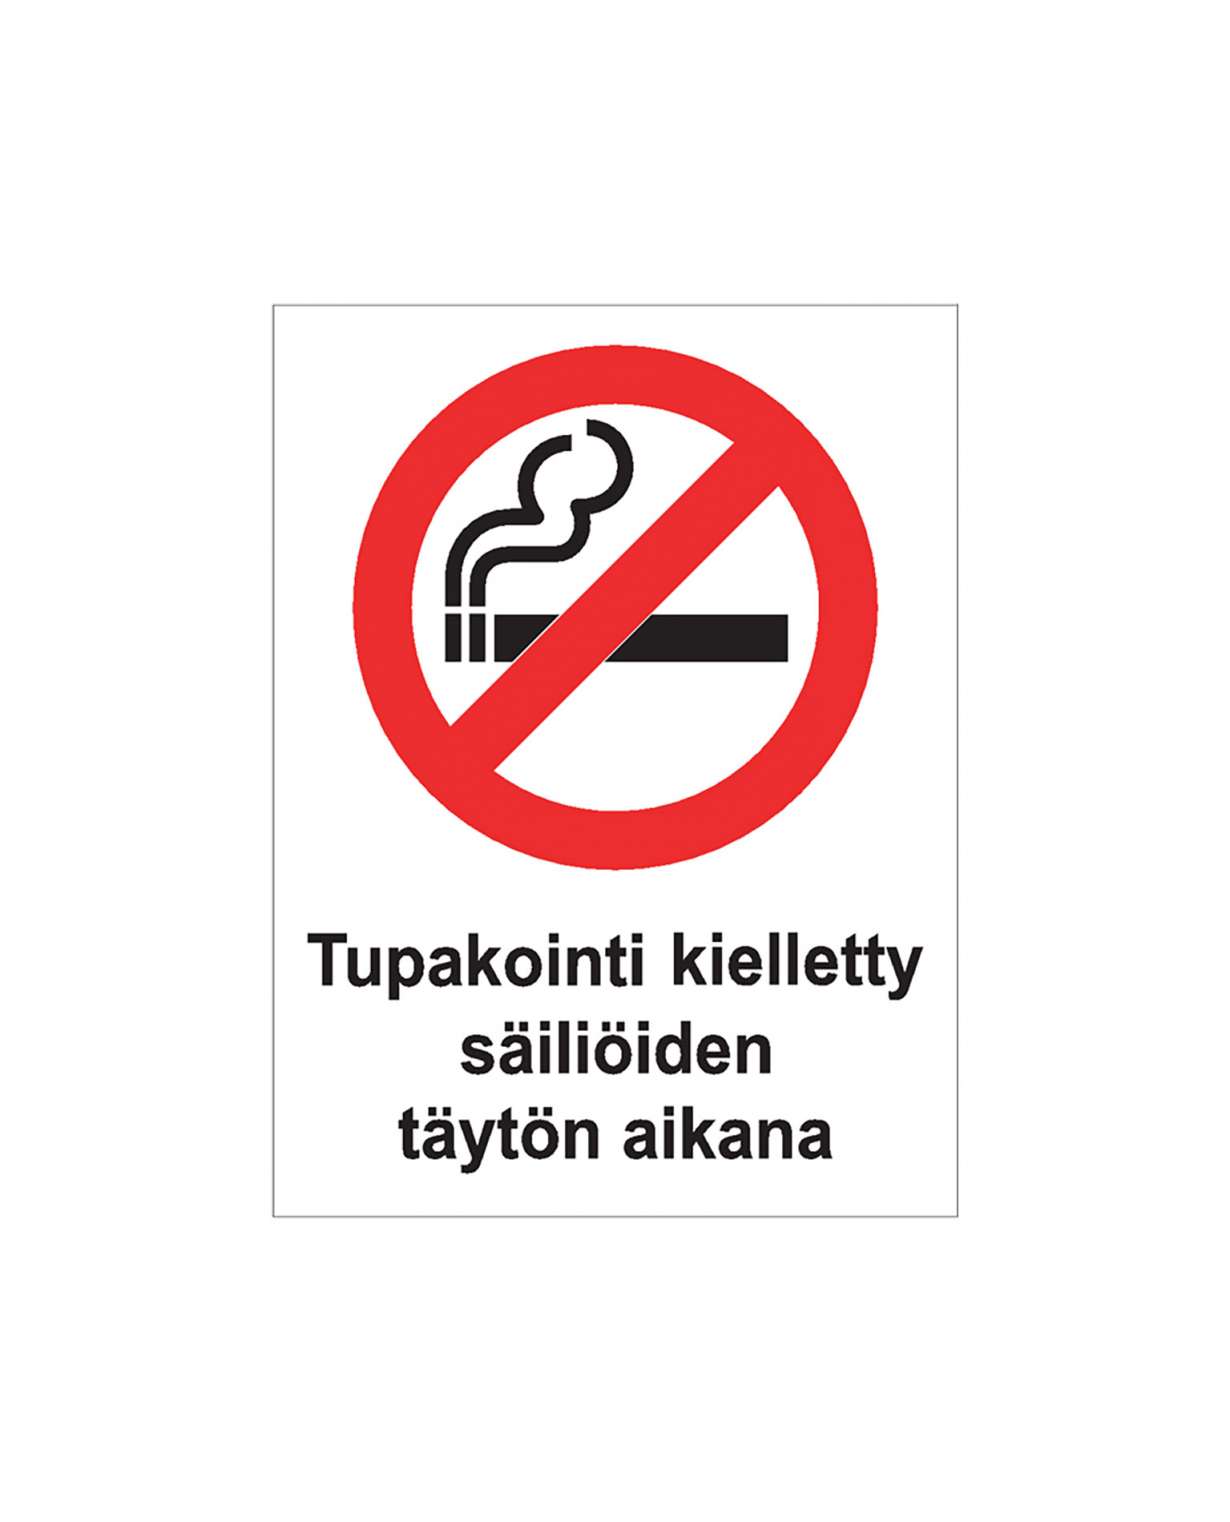 Tupakointi kielletty säiliöiden täytön aikana, Ibond alumiini, 300x400 mm